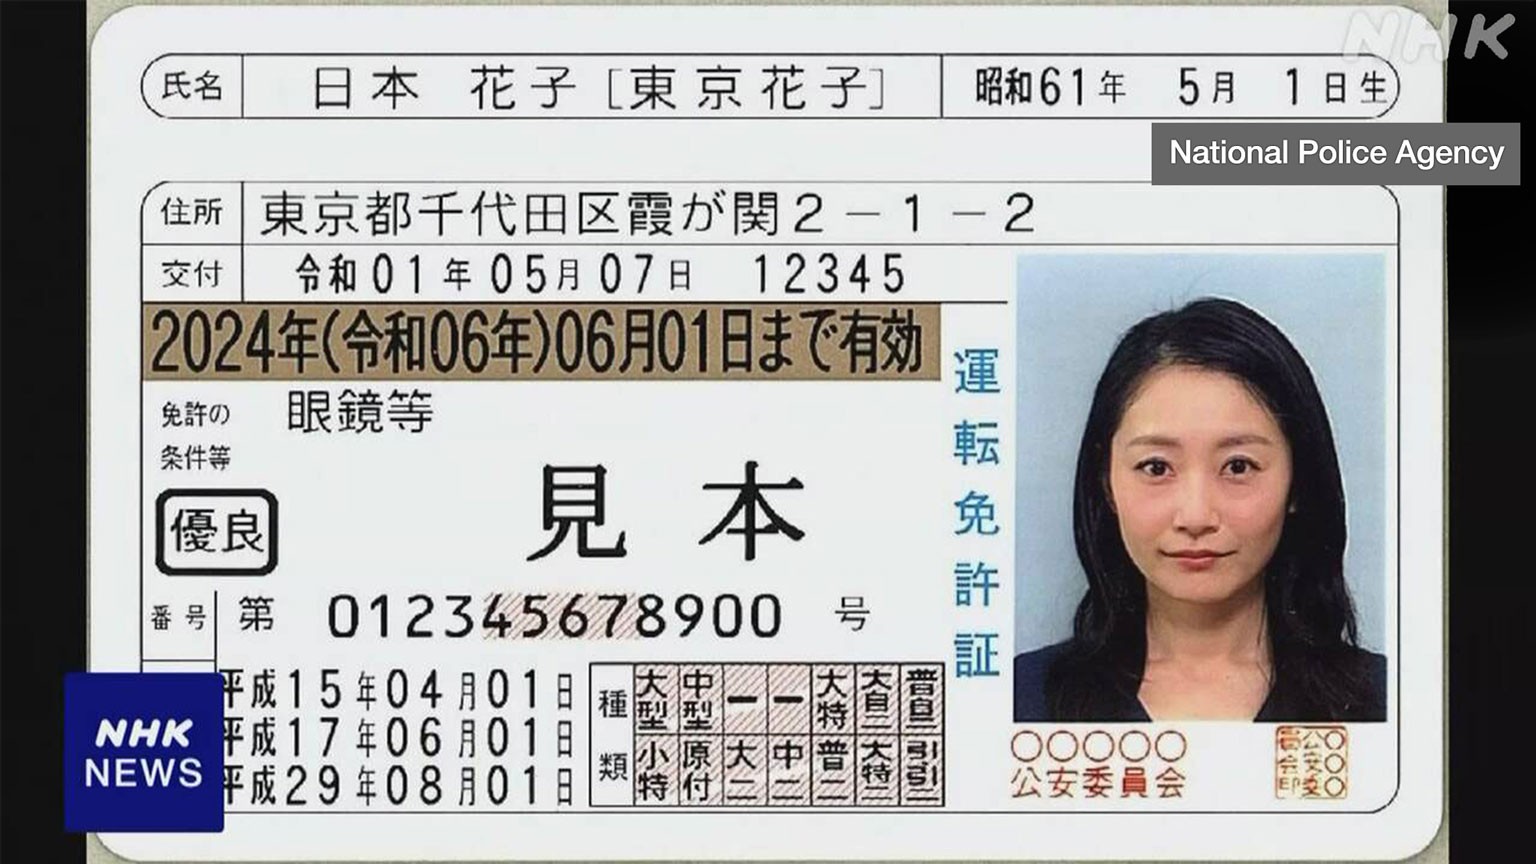 online fake drivers license maker